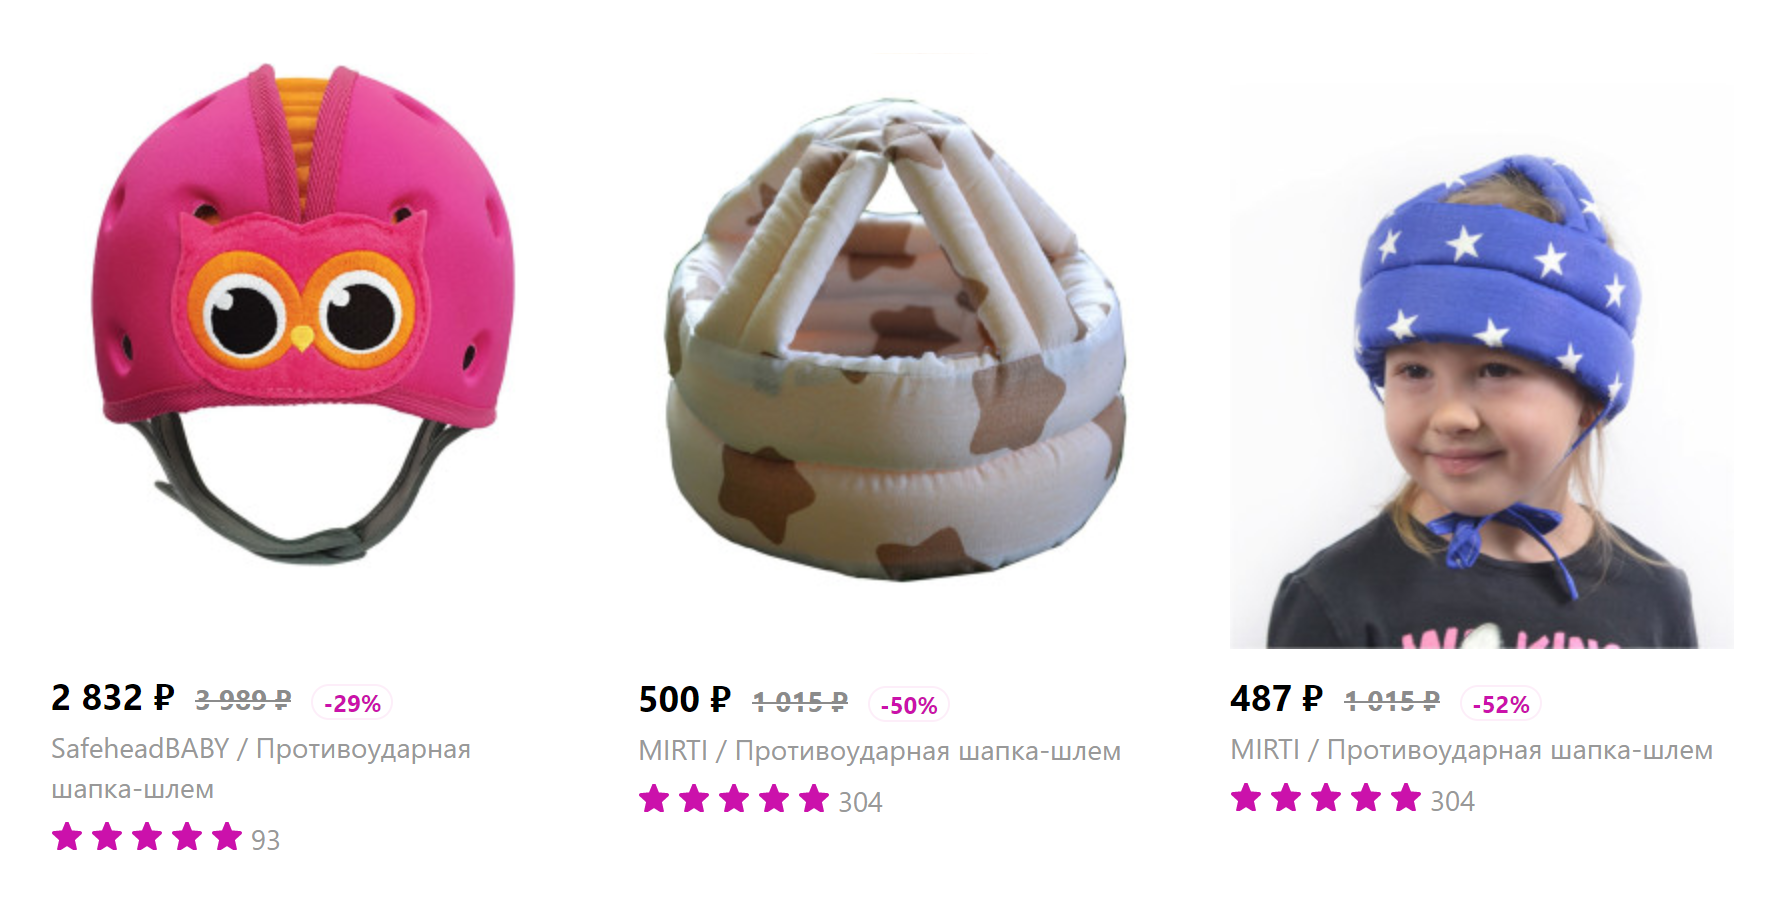 Я не стала переплачивать за внешний вид и купила самый дешевый шлем — такой же, как на ребенке справа